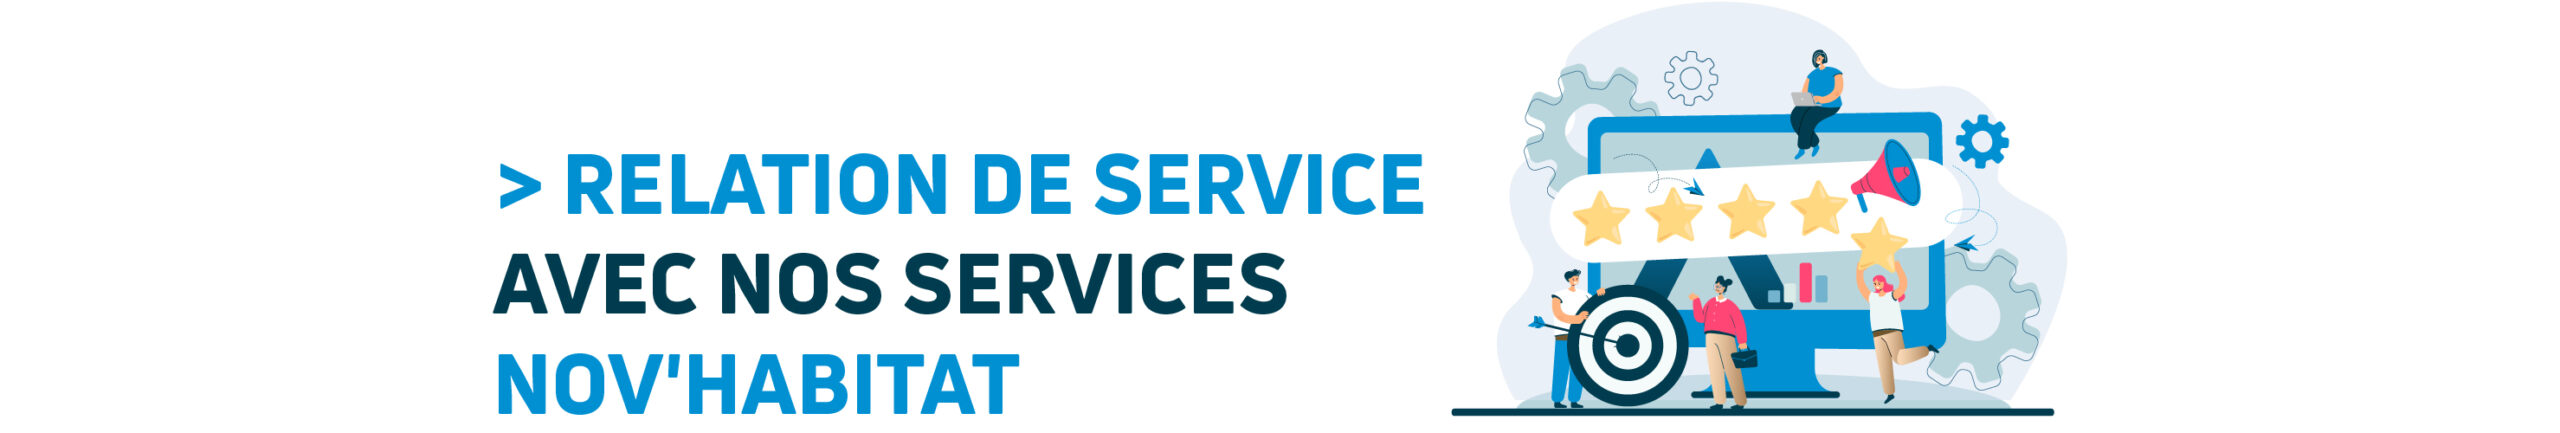 NOV'HABITAT et la relation de service avec nos services